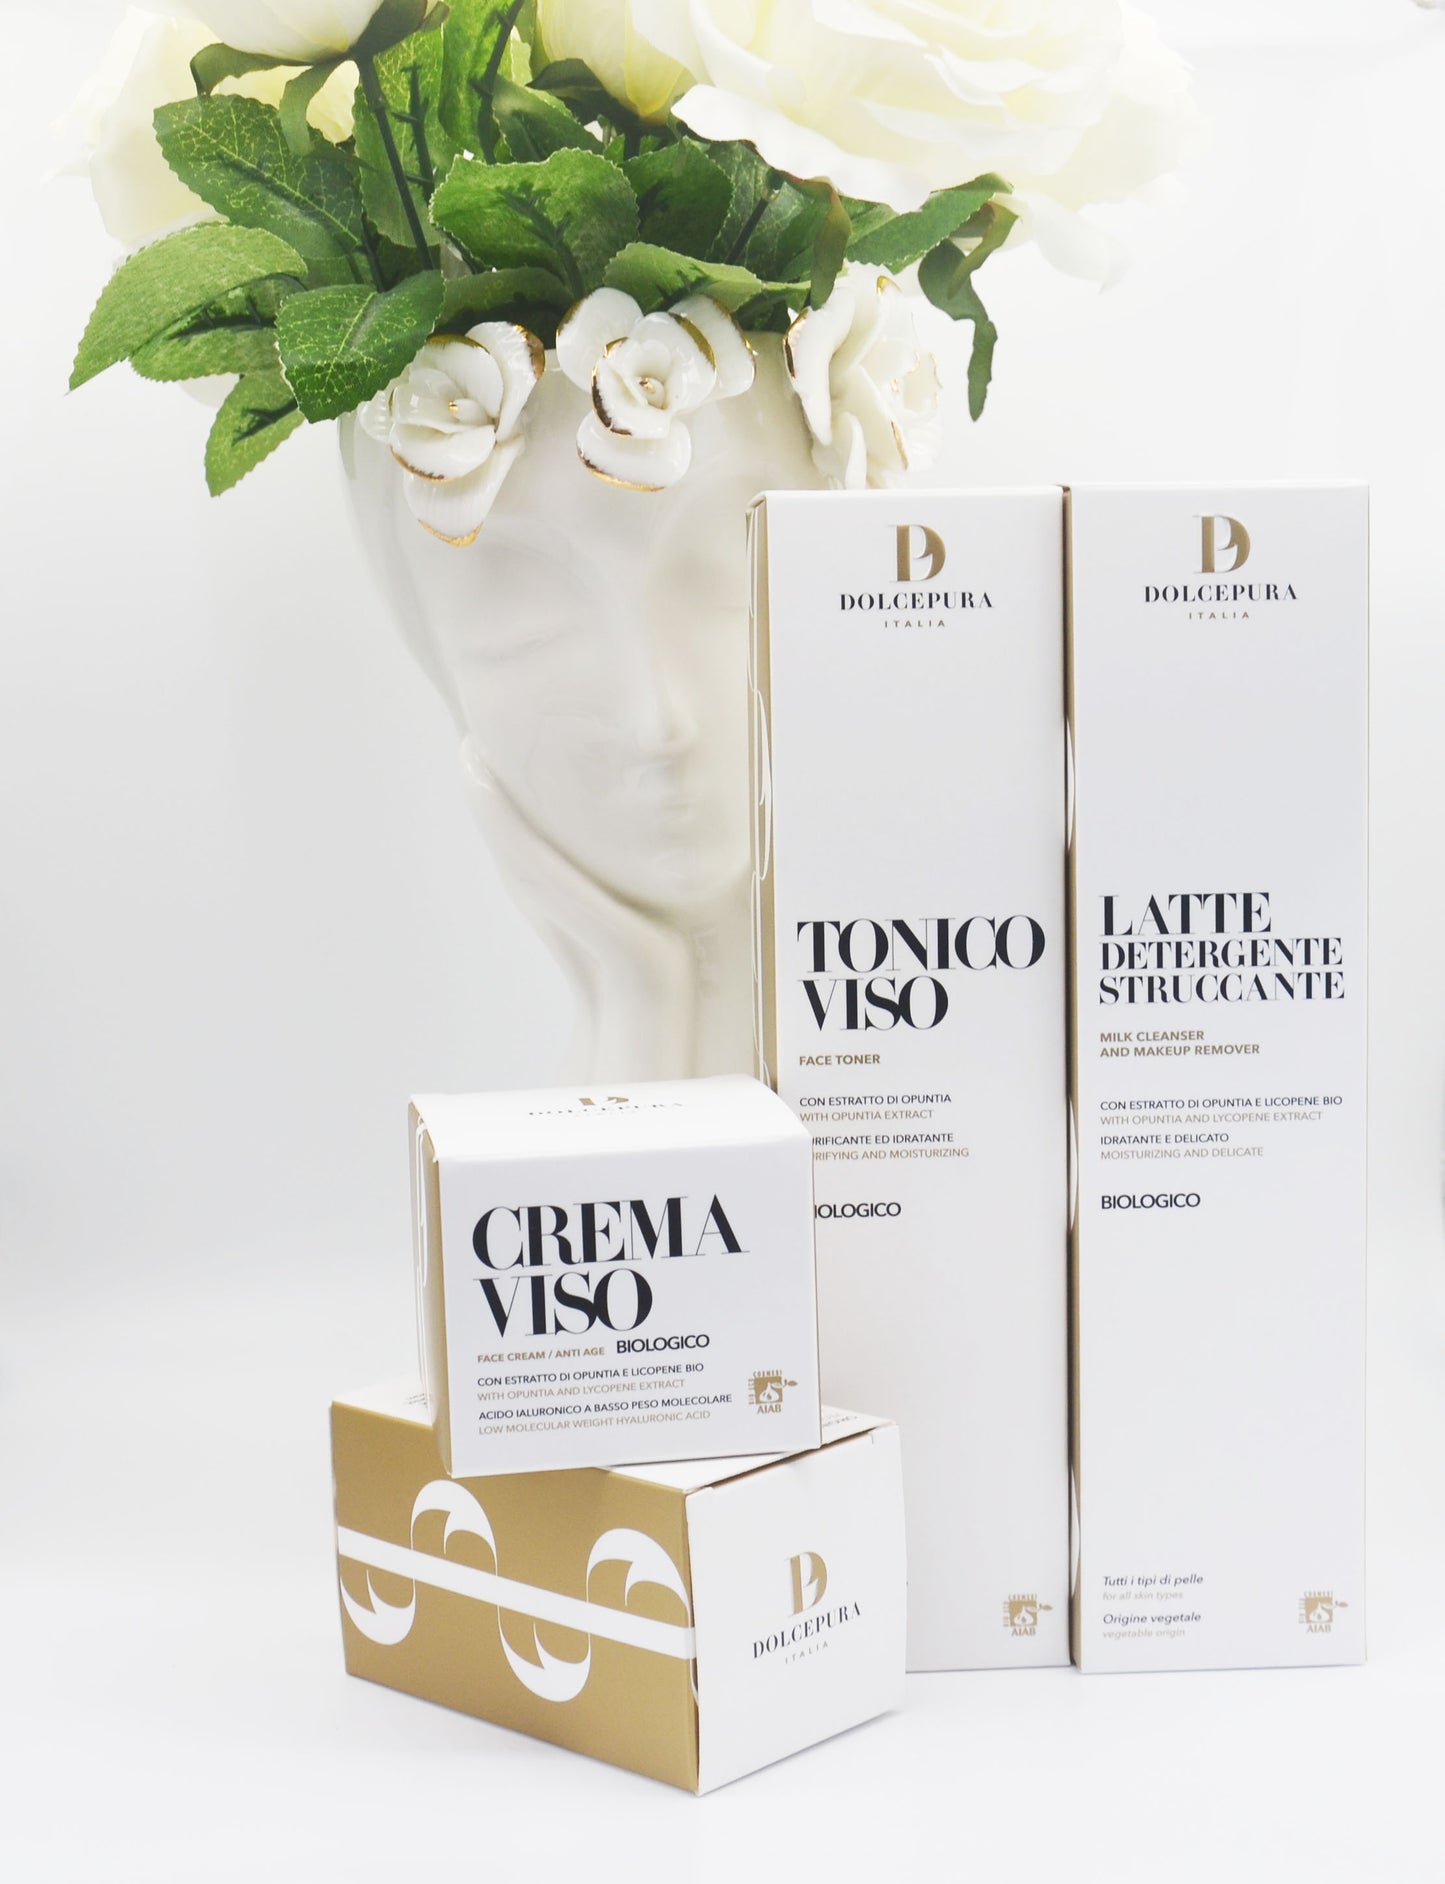 VISO-Set "UNICA" Reinigungs milch, Tonic und Bio-Creme (Opuntia und Lycopin) der kleinen italienischen Produktion